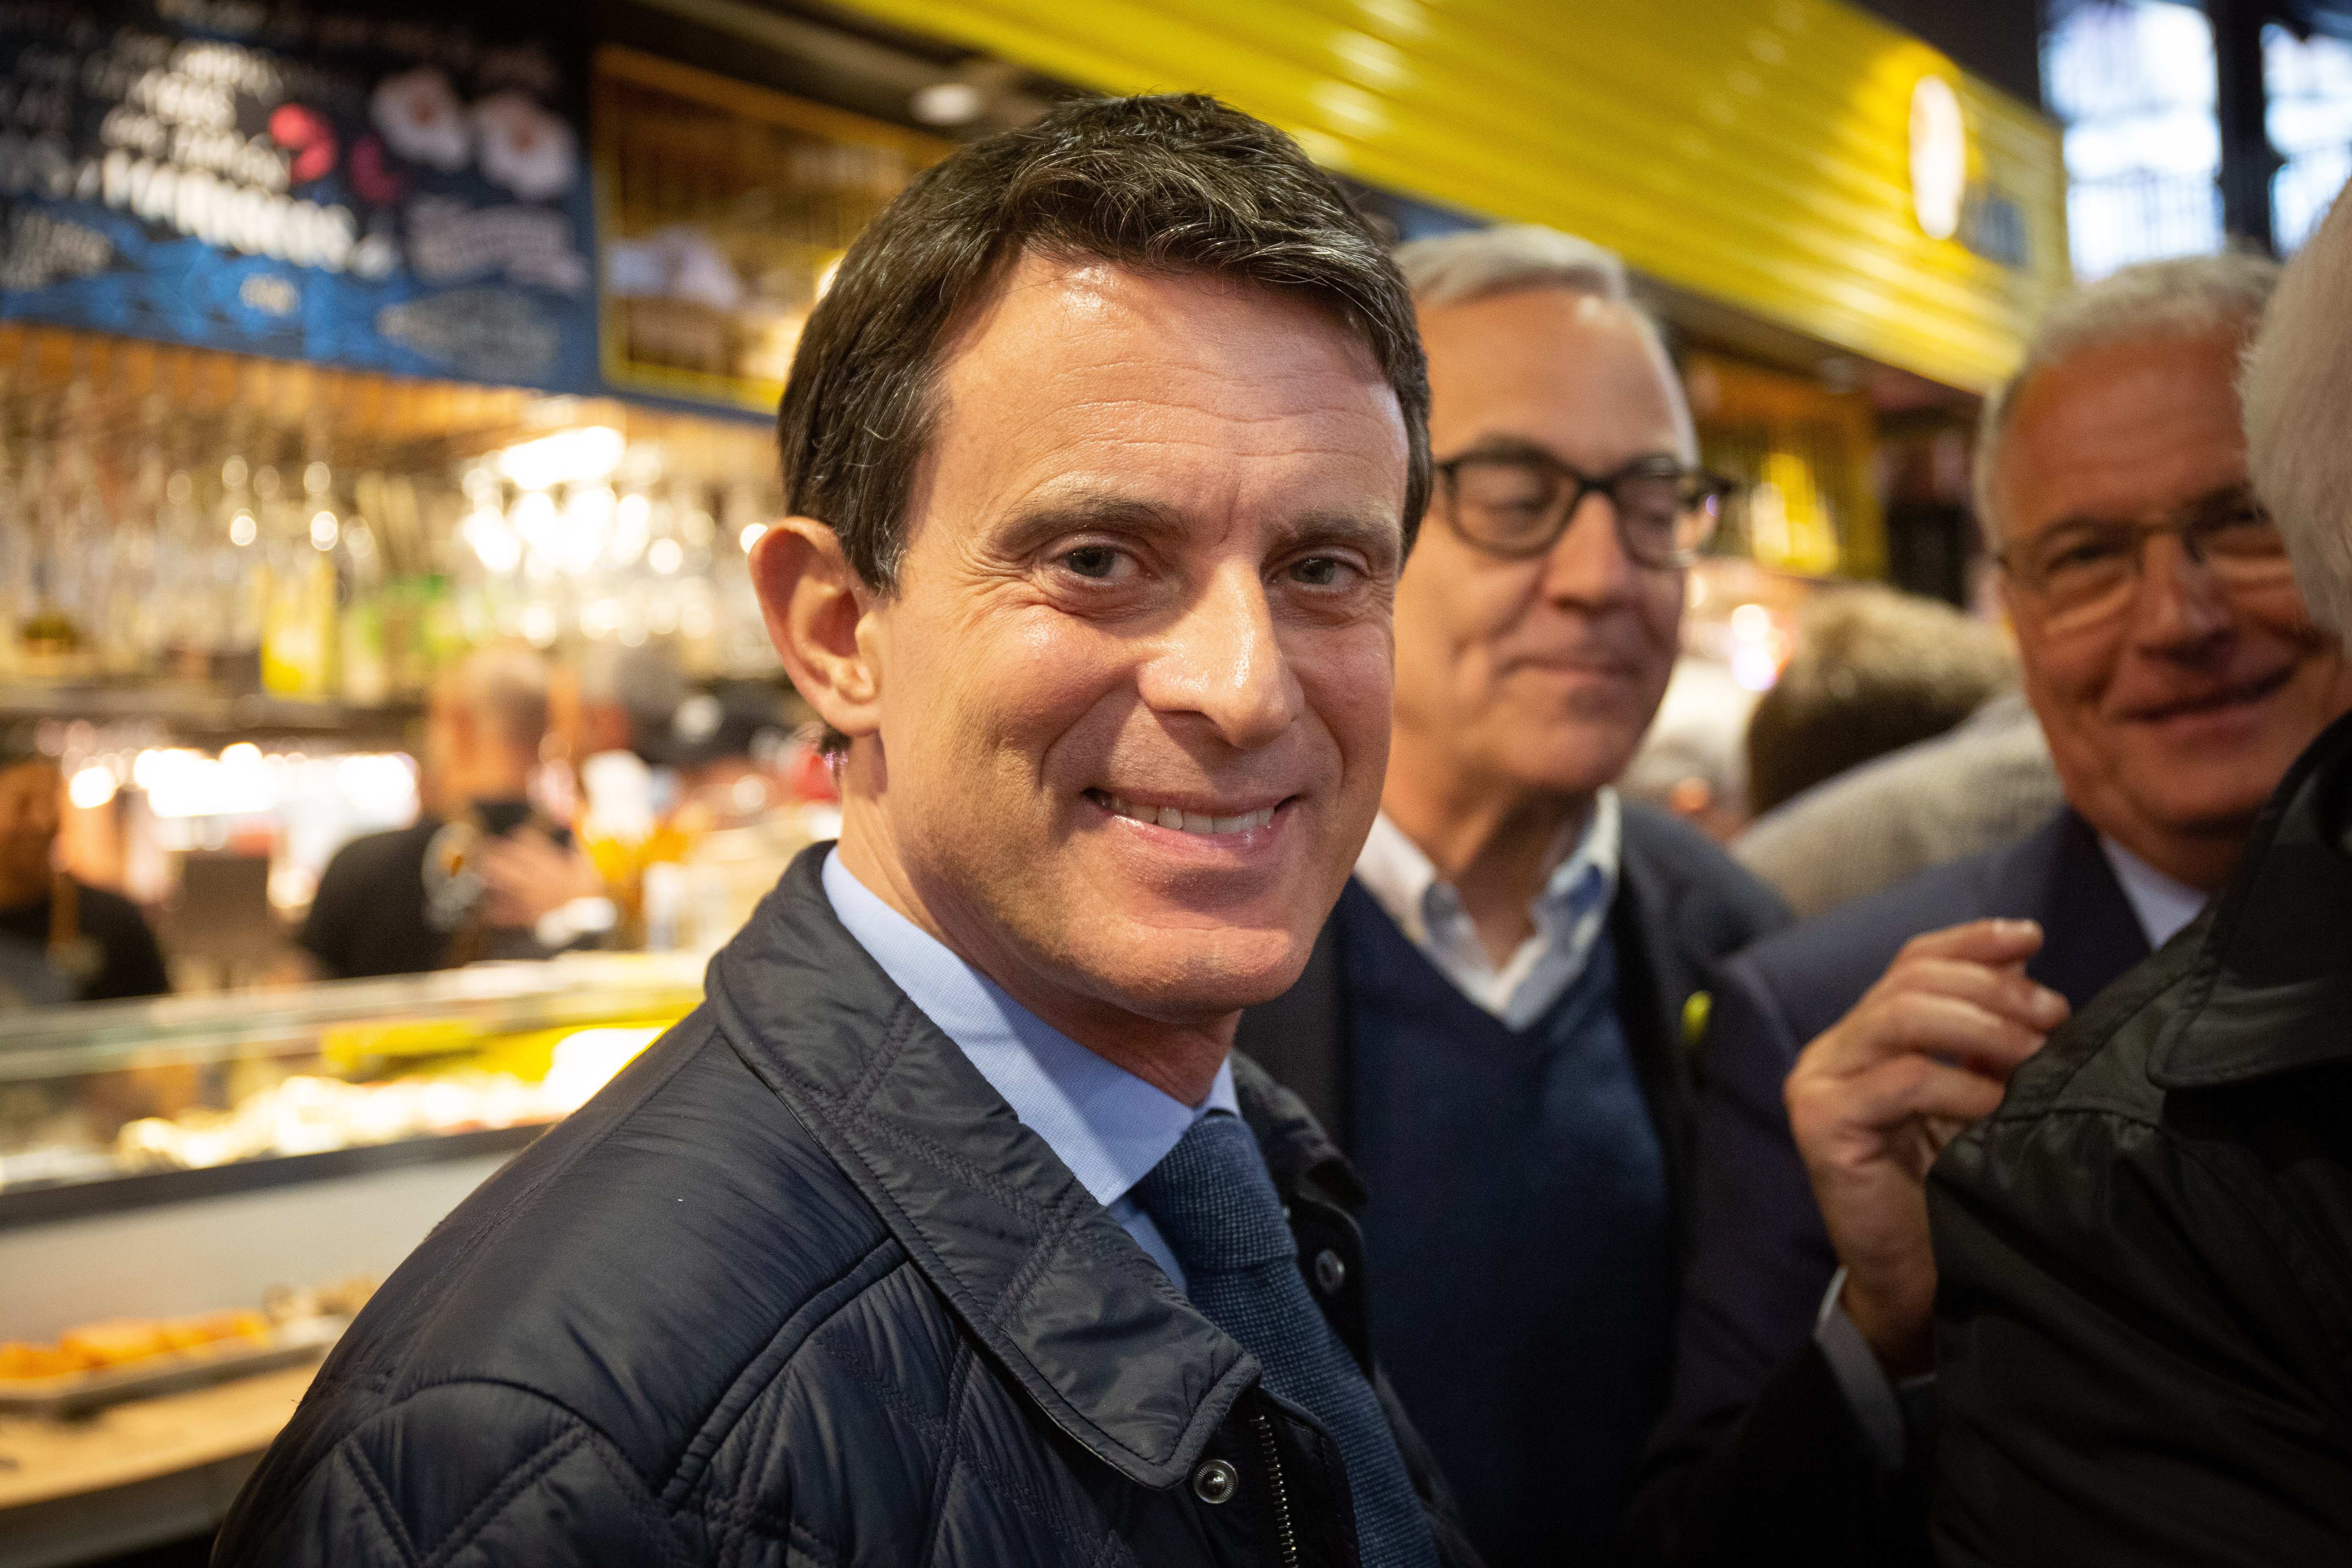 Valls levanta ampollas en el partido de Macron